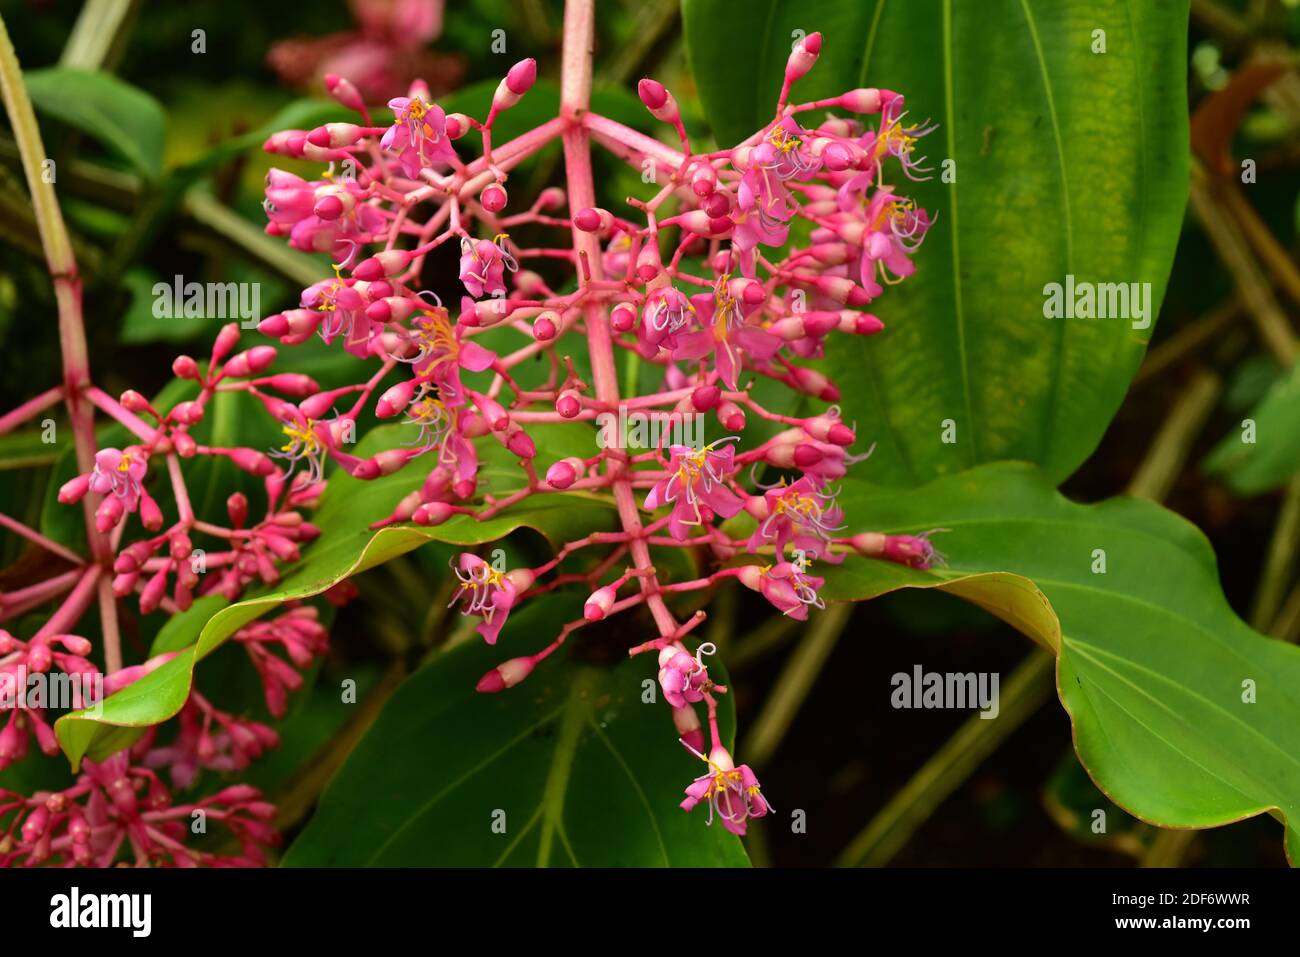 L'uva rosa o medinilla showy (Medinilla magnifica) è una pianta epifitica originaria delle Filippine. Pianta fiorente. Foto Stock